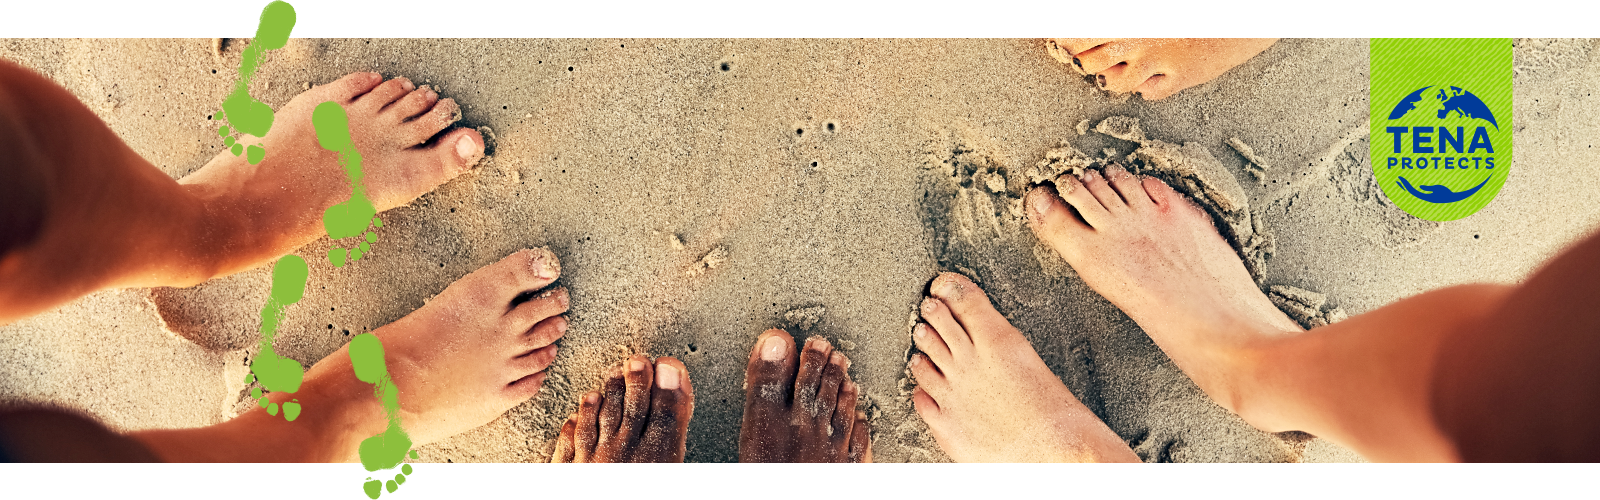 Nahaufnahme von nackten Füßen im Sand zusammen mit einer Abbildung von grünen Fußabdrücken und dem TENA Protects Logo